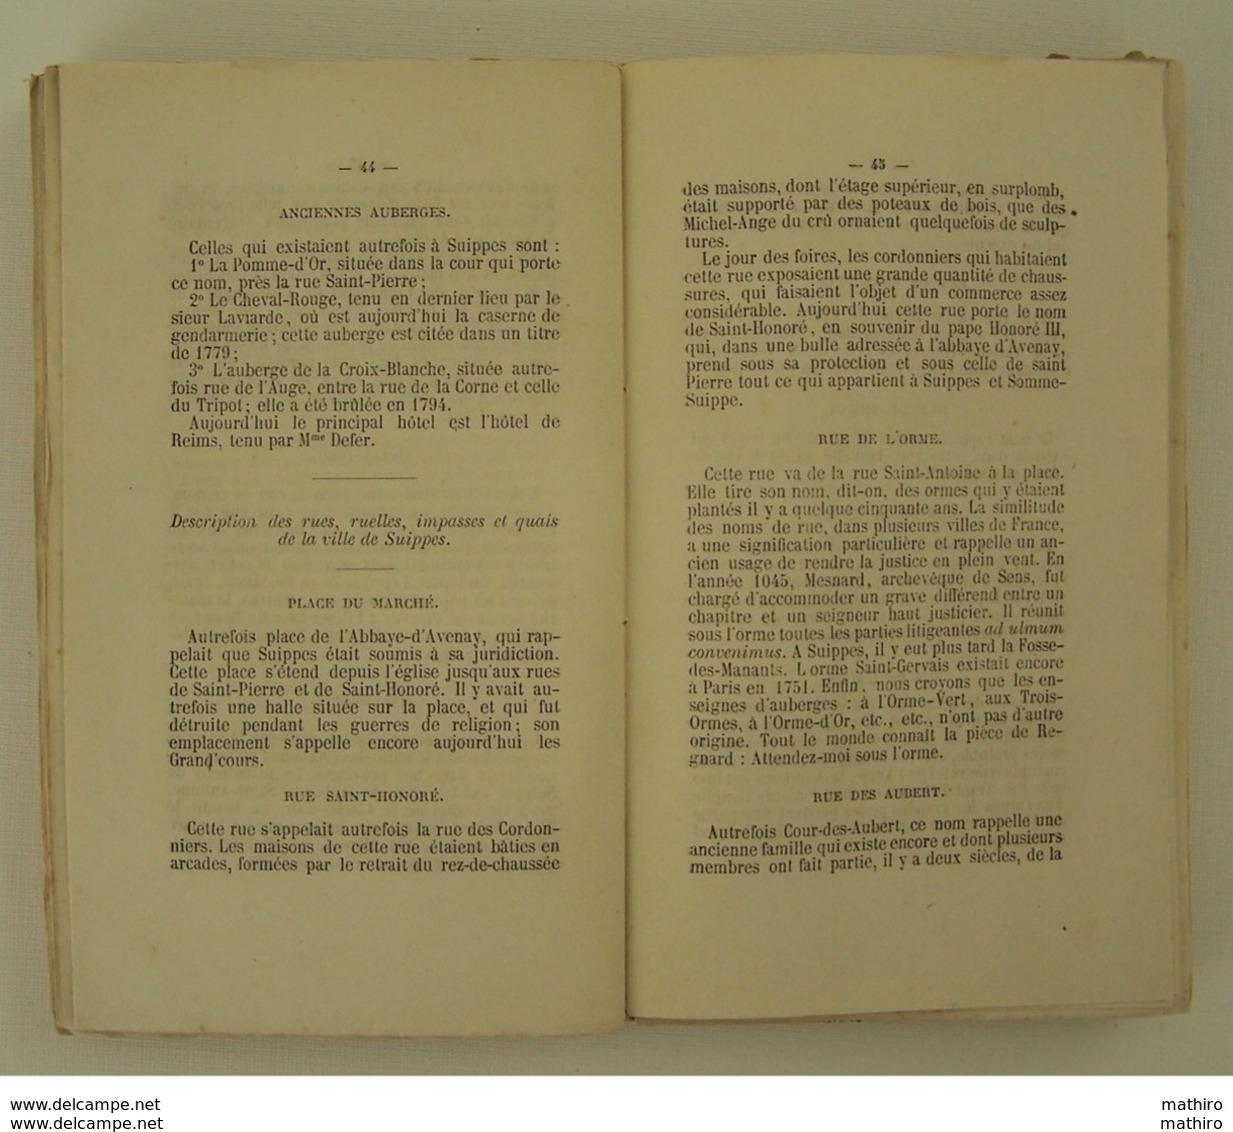 Annuaire administratif,statistique et historique de la Marne de 1873 et 1874  (voir les tables des matières )